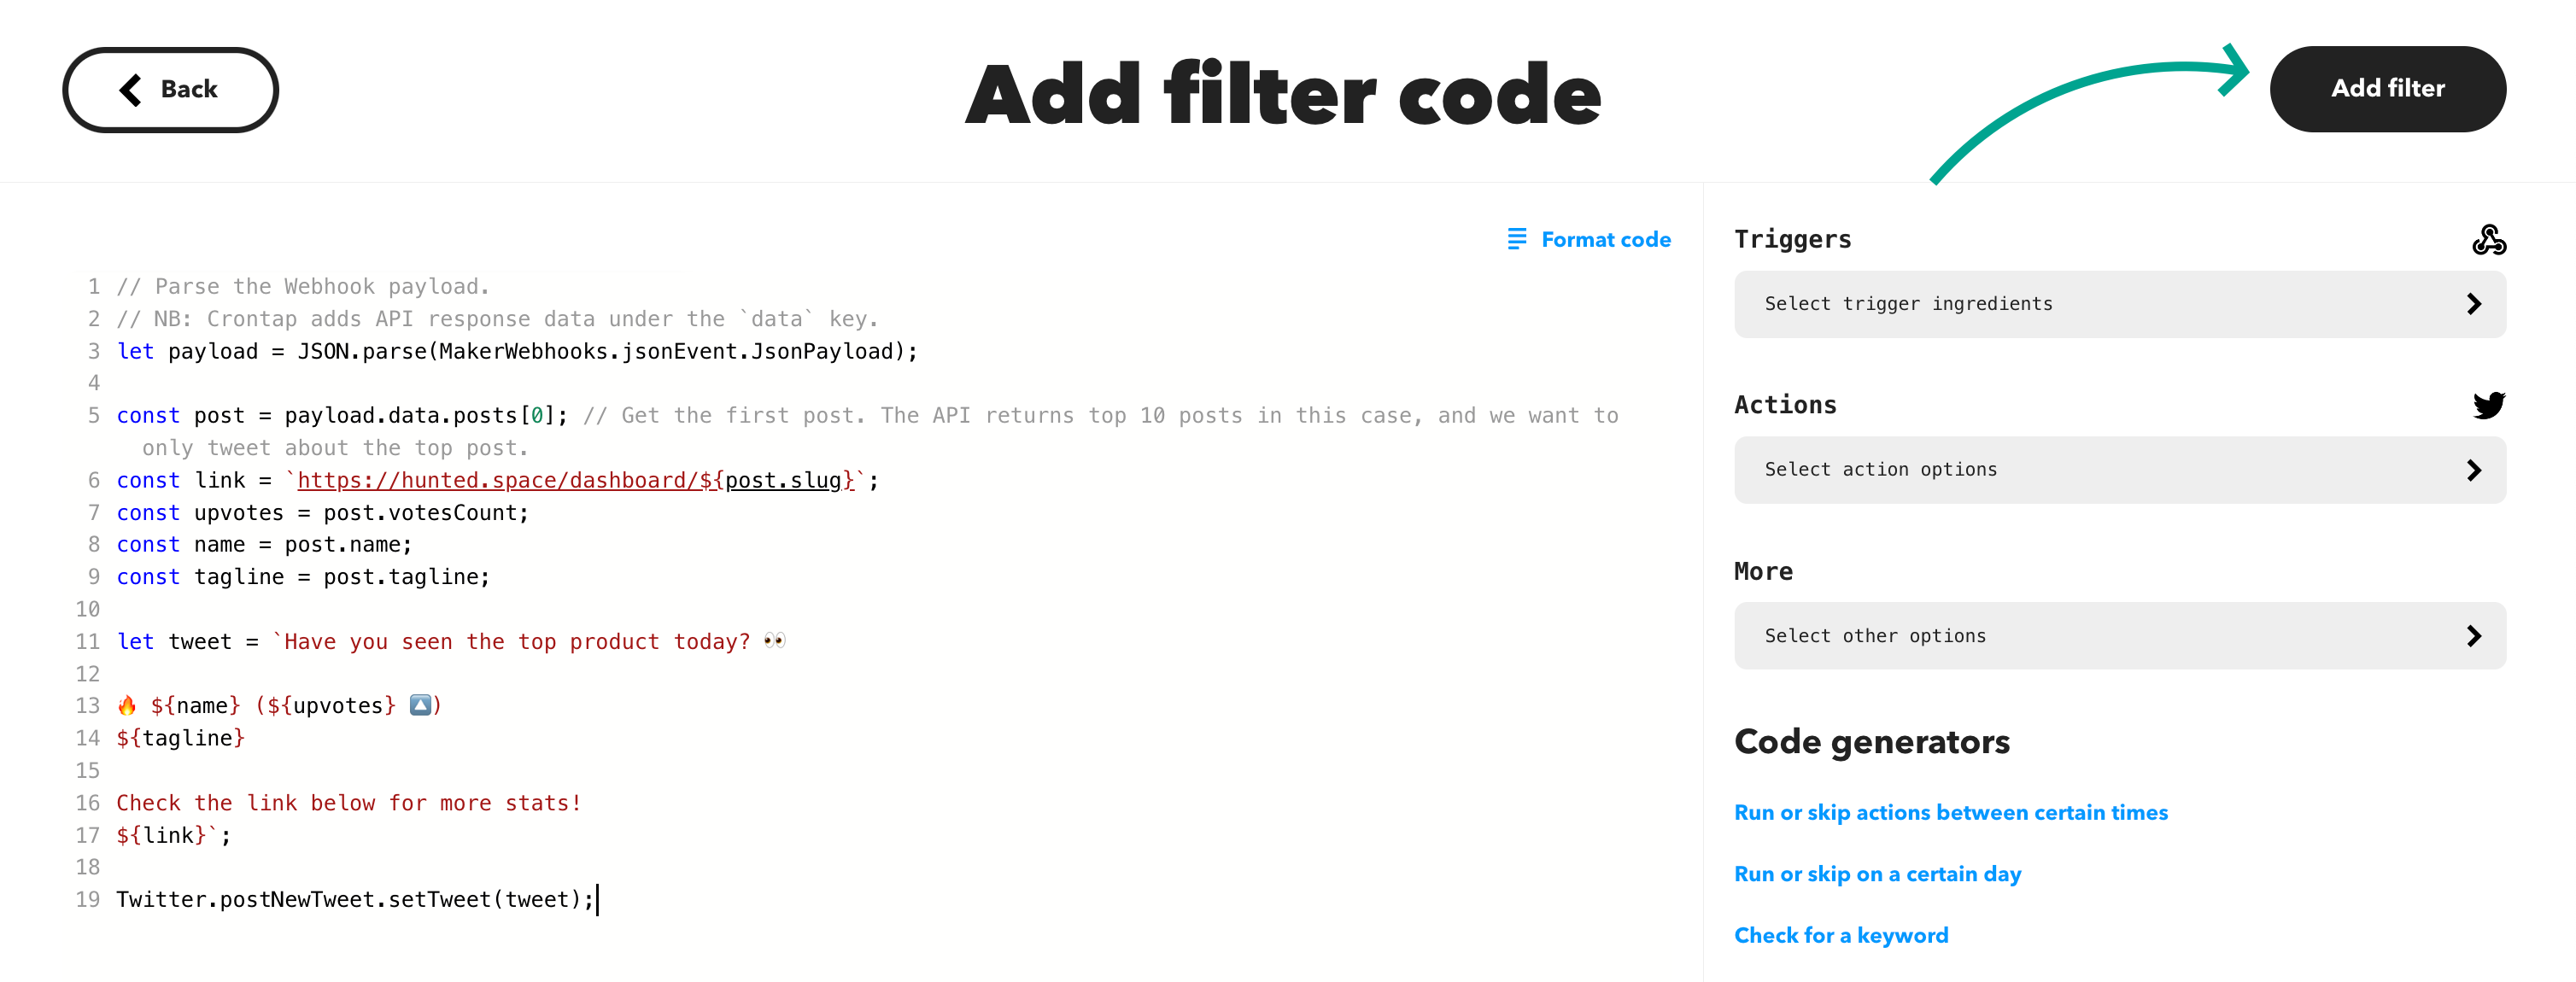 IFTTT add filter code